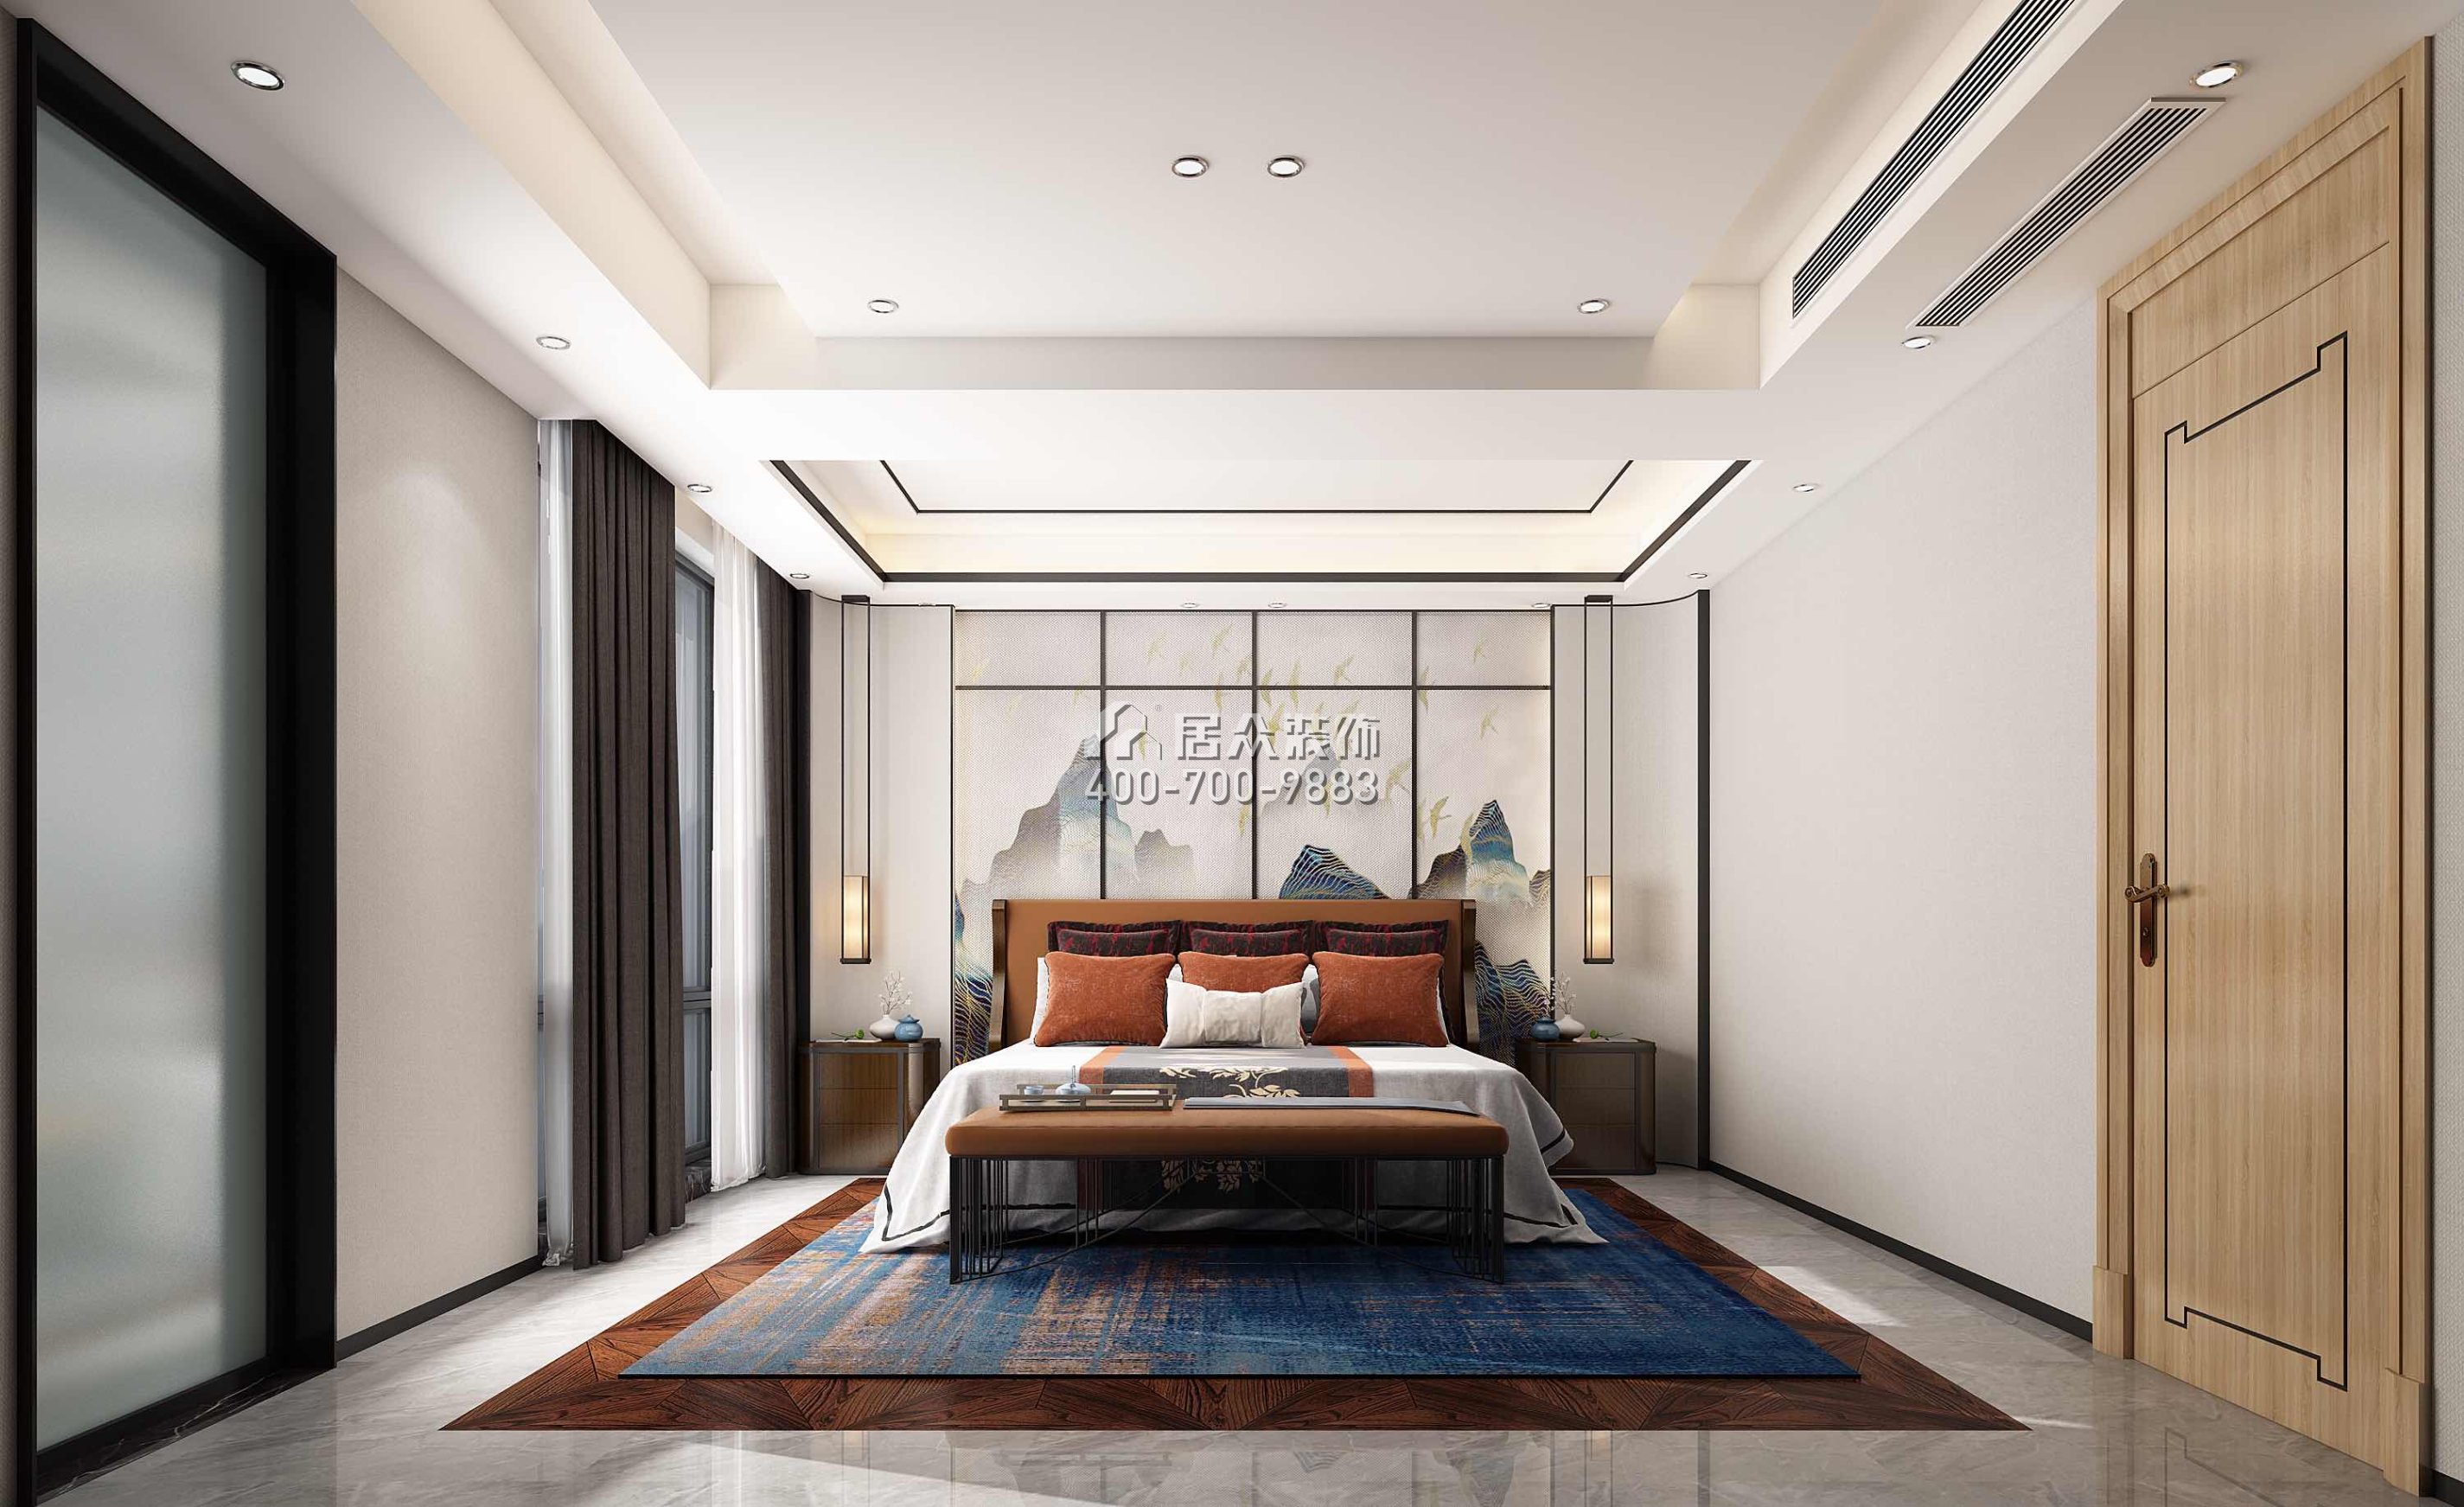 星河丹堤1150平方米中式风格别墅户型卧室装修效果图